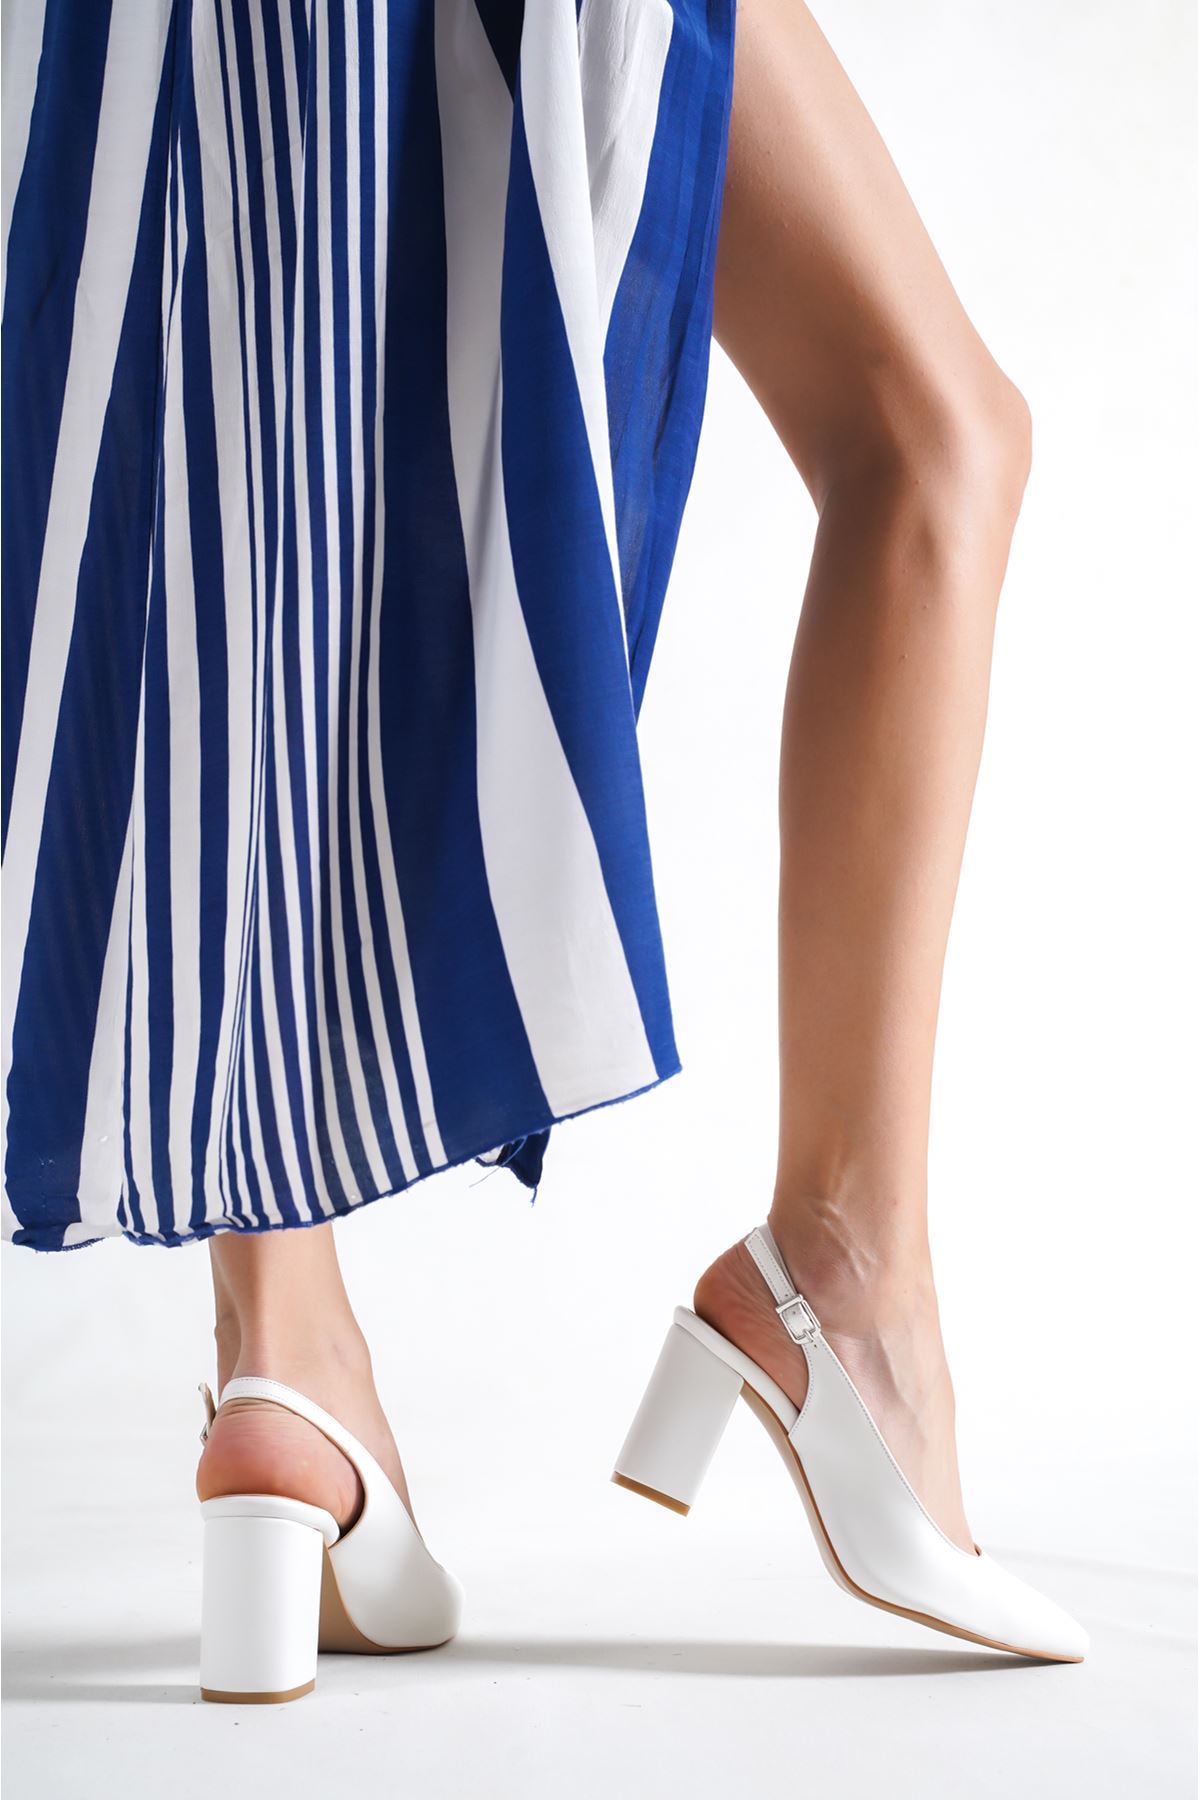 Macan Beyaz Cilt Kısa Topuklu Kadın Ayakkabı